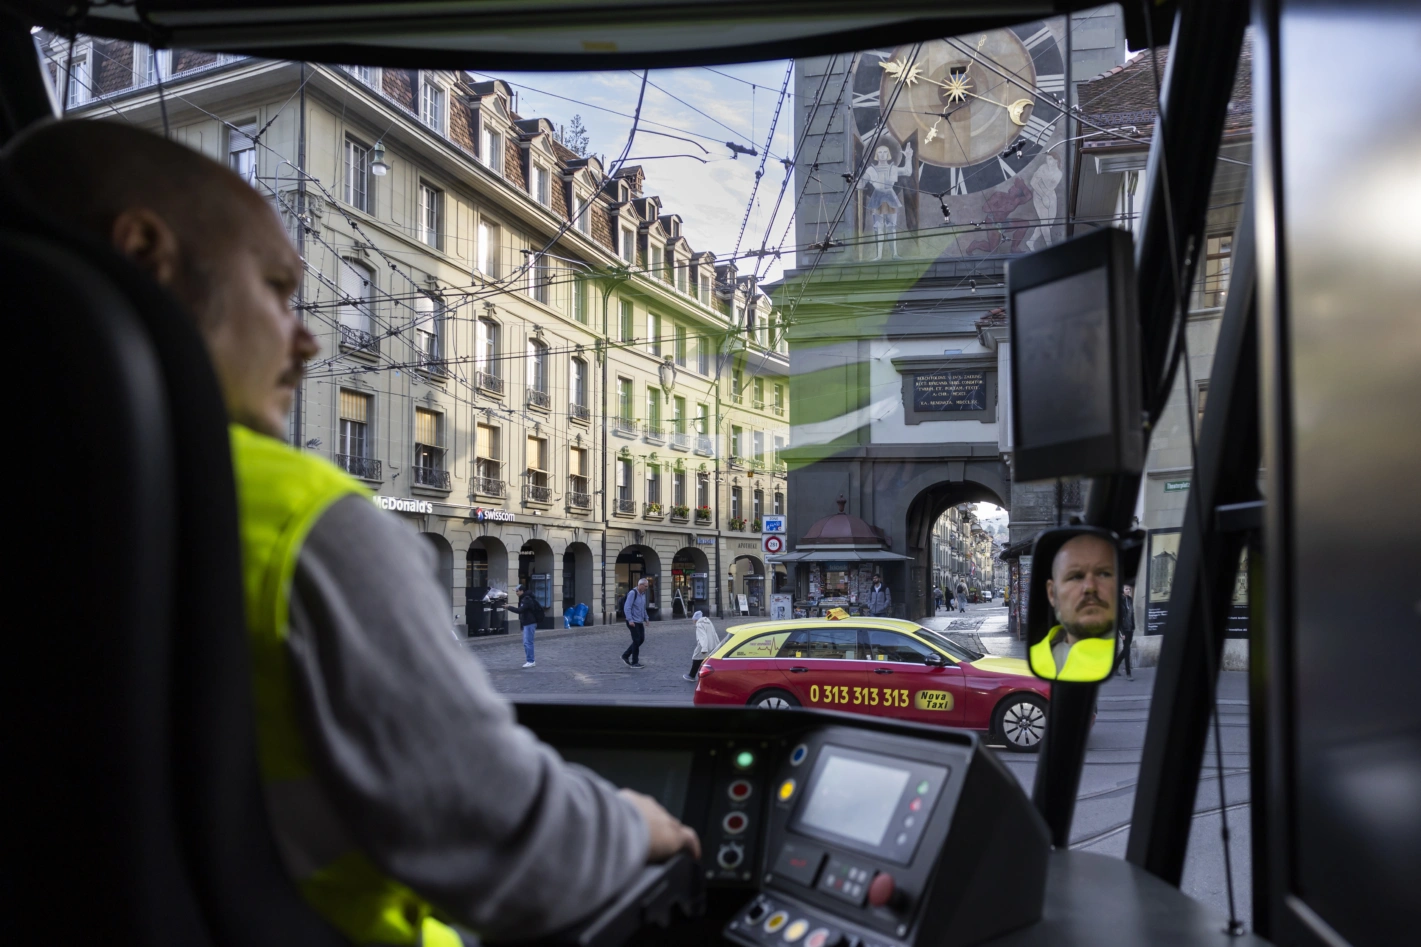 Von Tramführerinnen und Tramführern wird im städtischen Verkehr höchste Konzentration gefordert. Foto: Peter Klaunzer (Keystone)